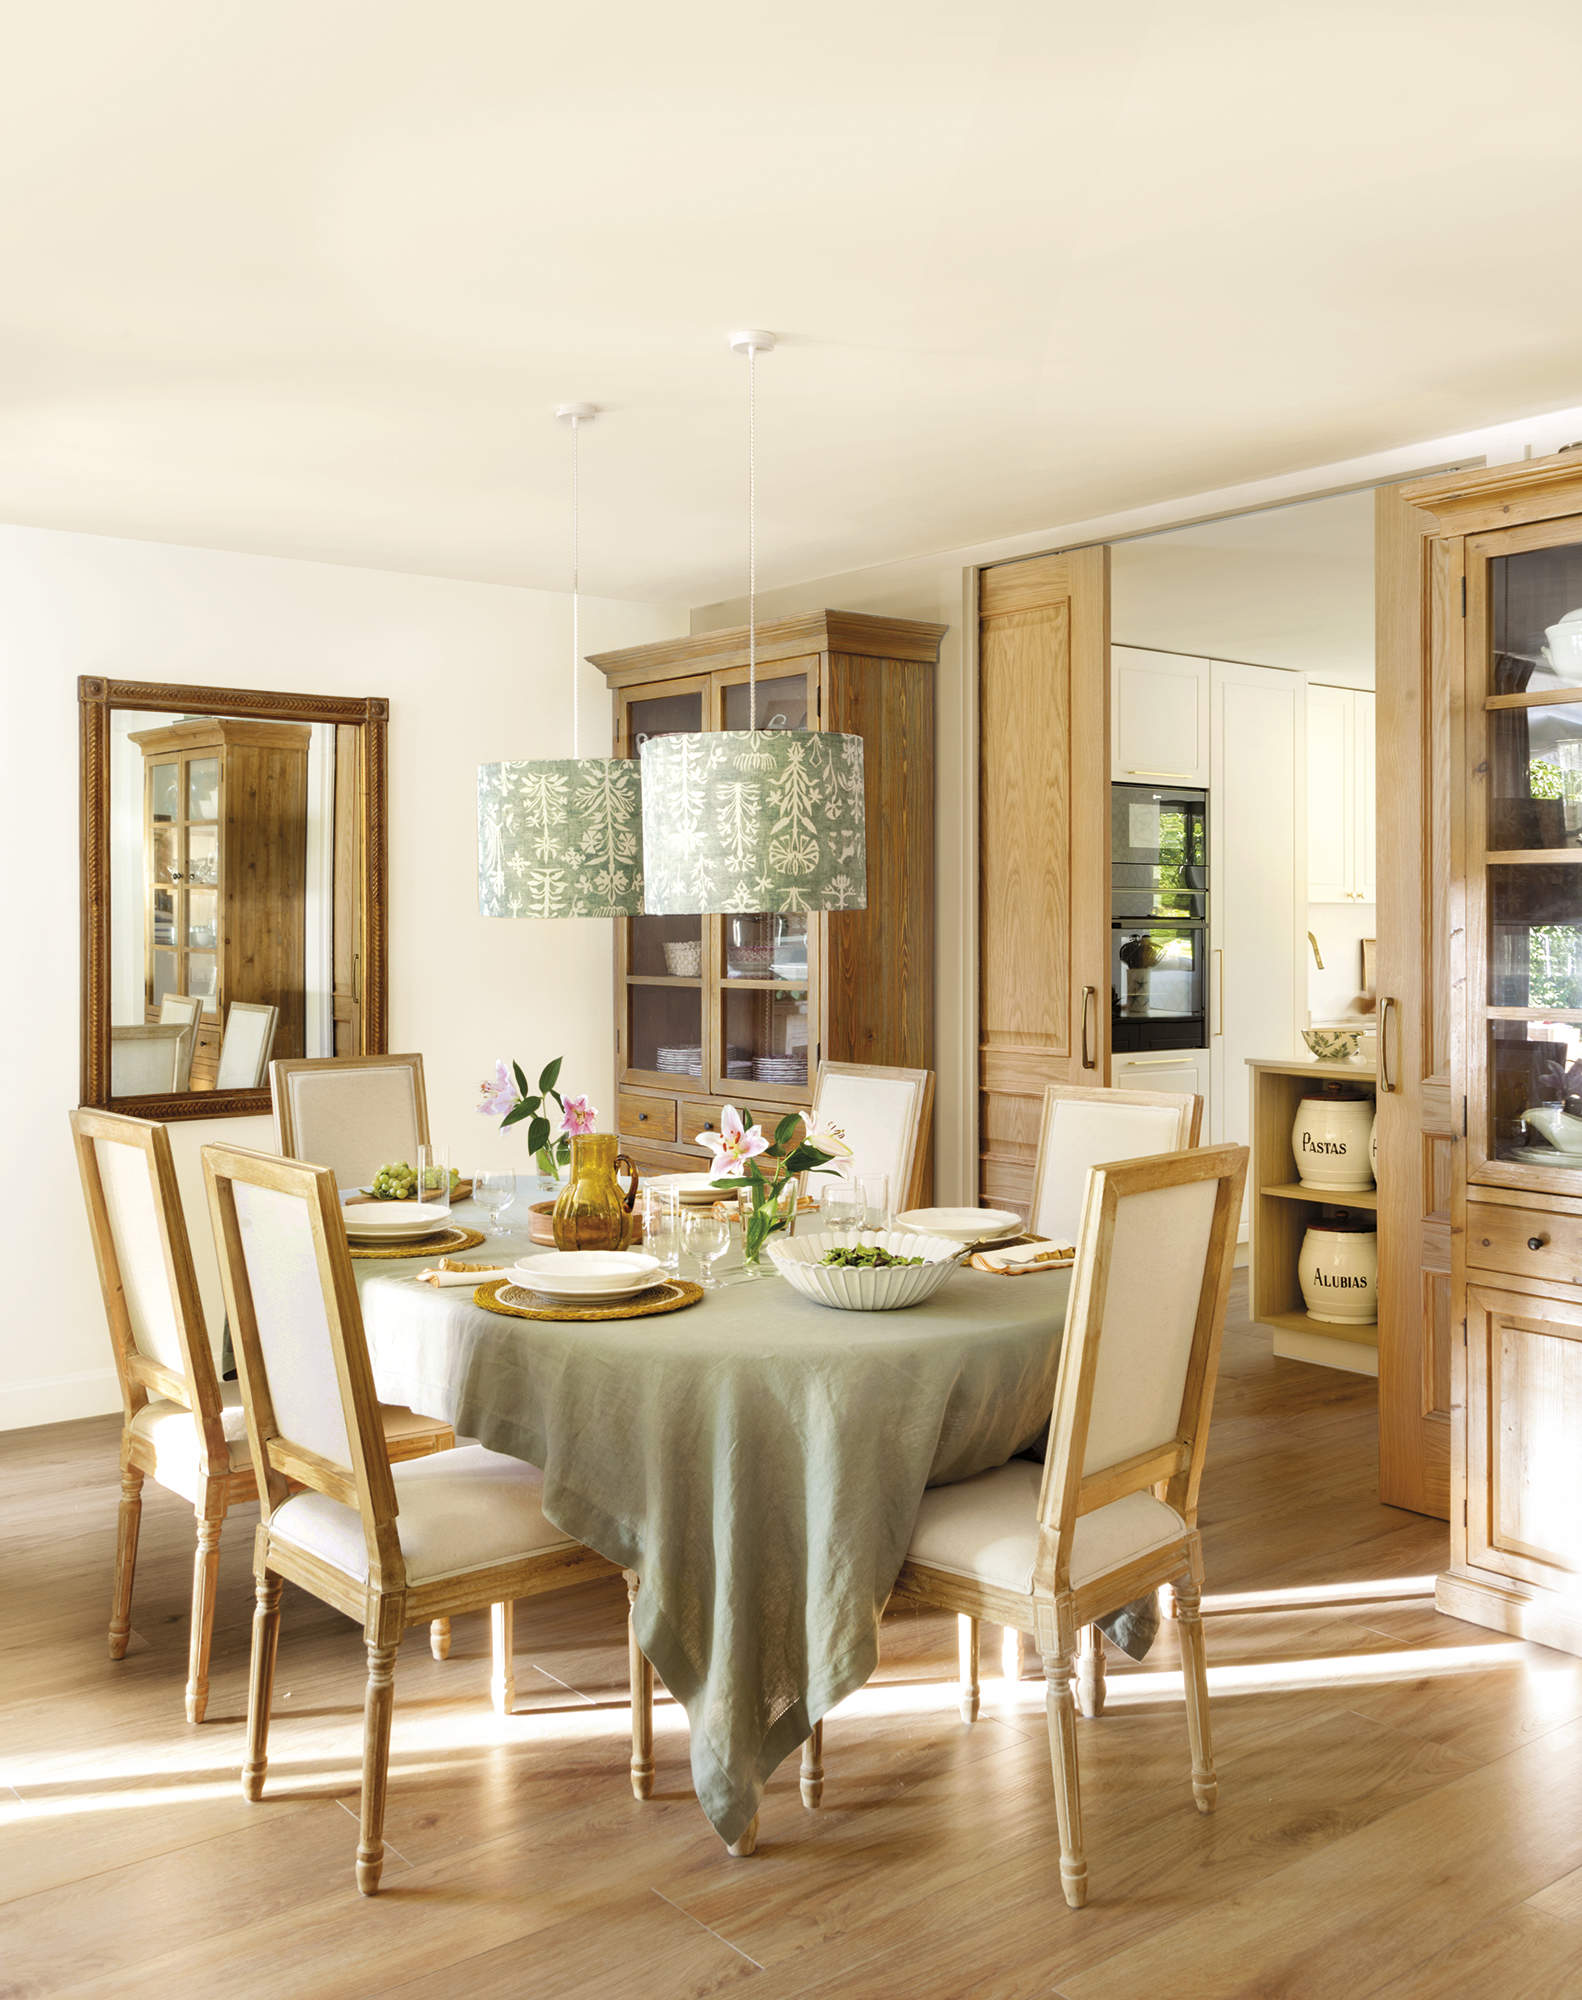 Comedor con mesa con mantel verde y sillas de madera tapizadas, espejo, vajilla blanca, suelo de madera